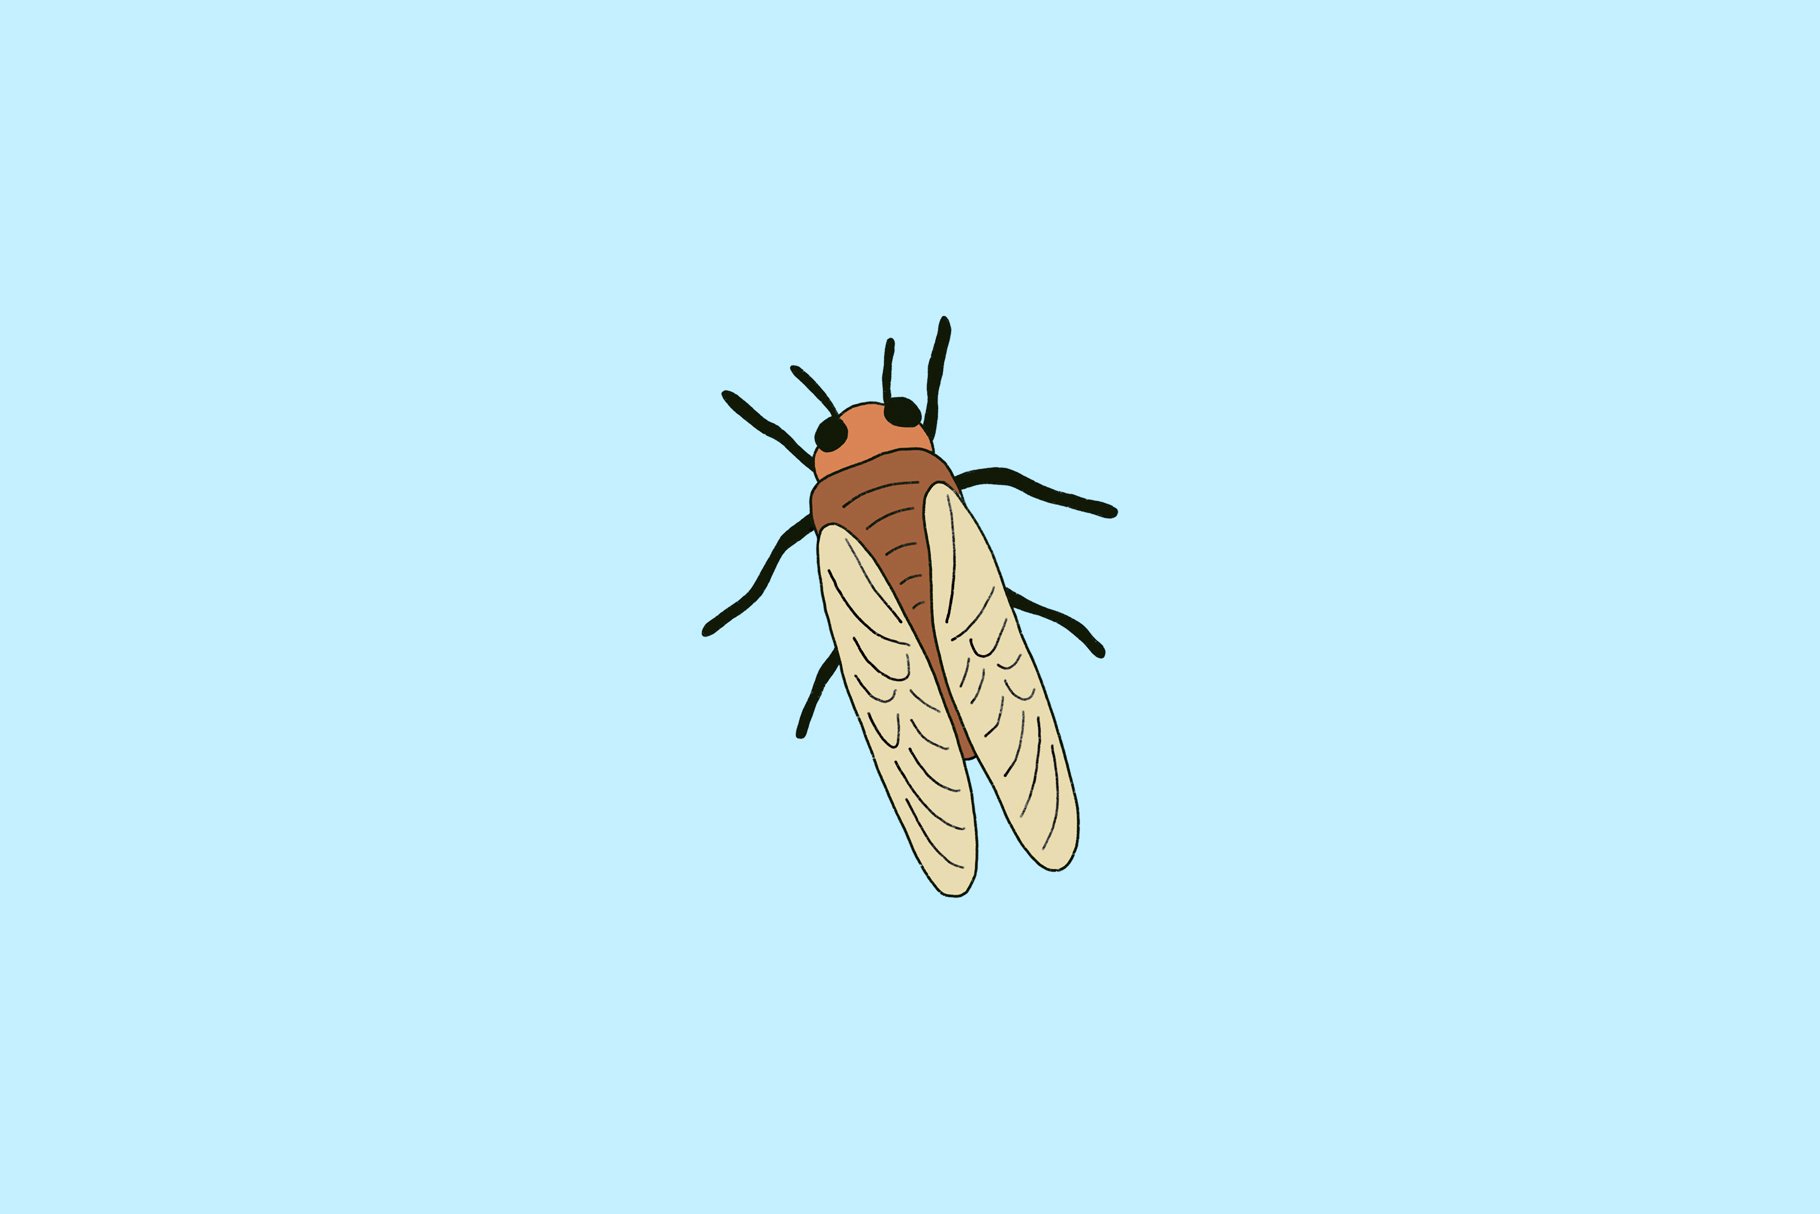 cicadas screenshot 3 887